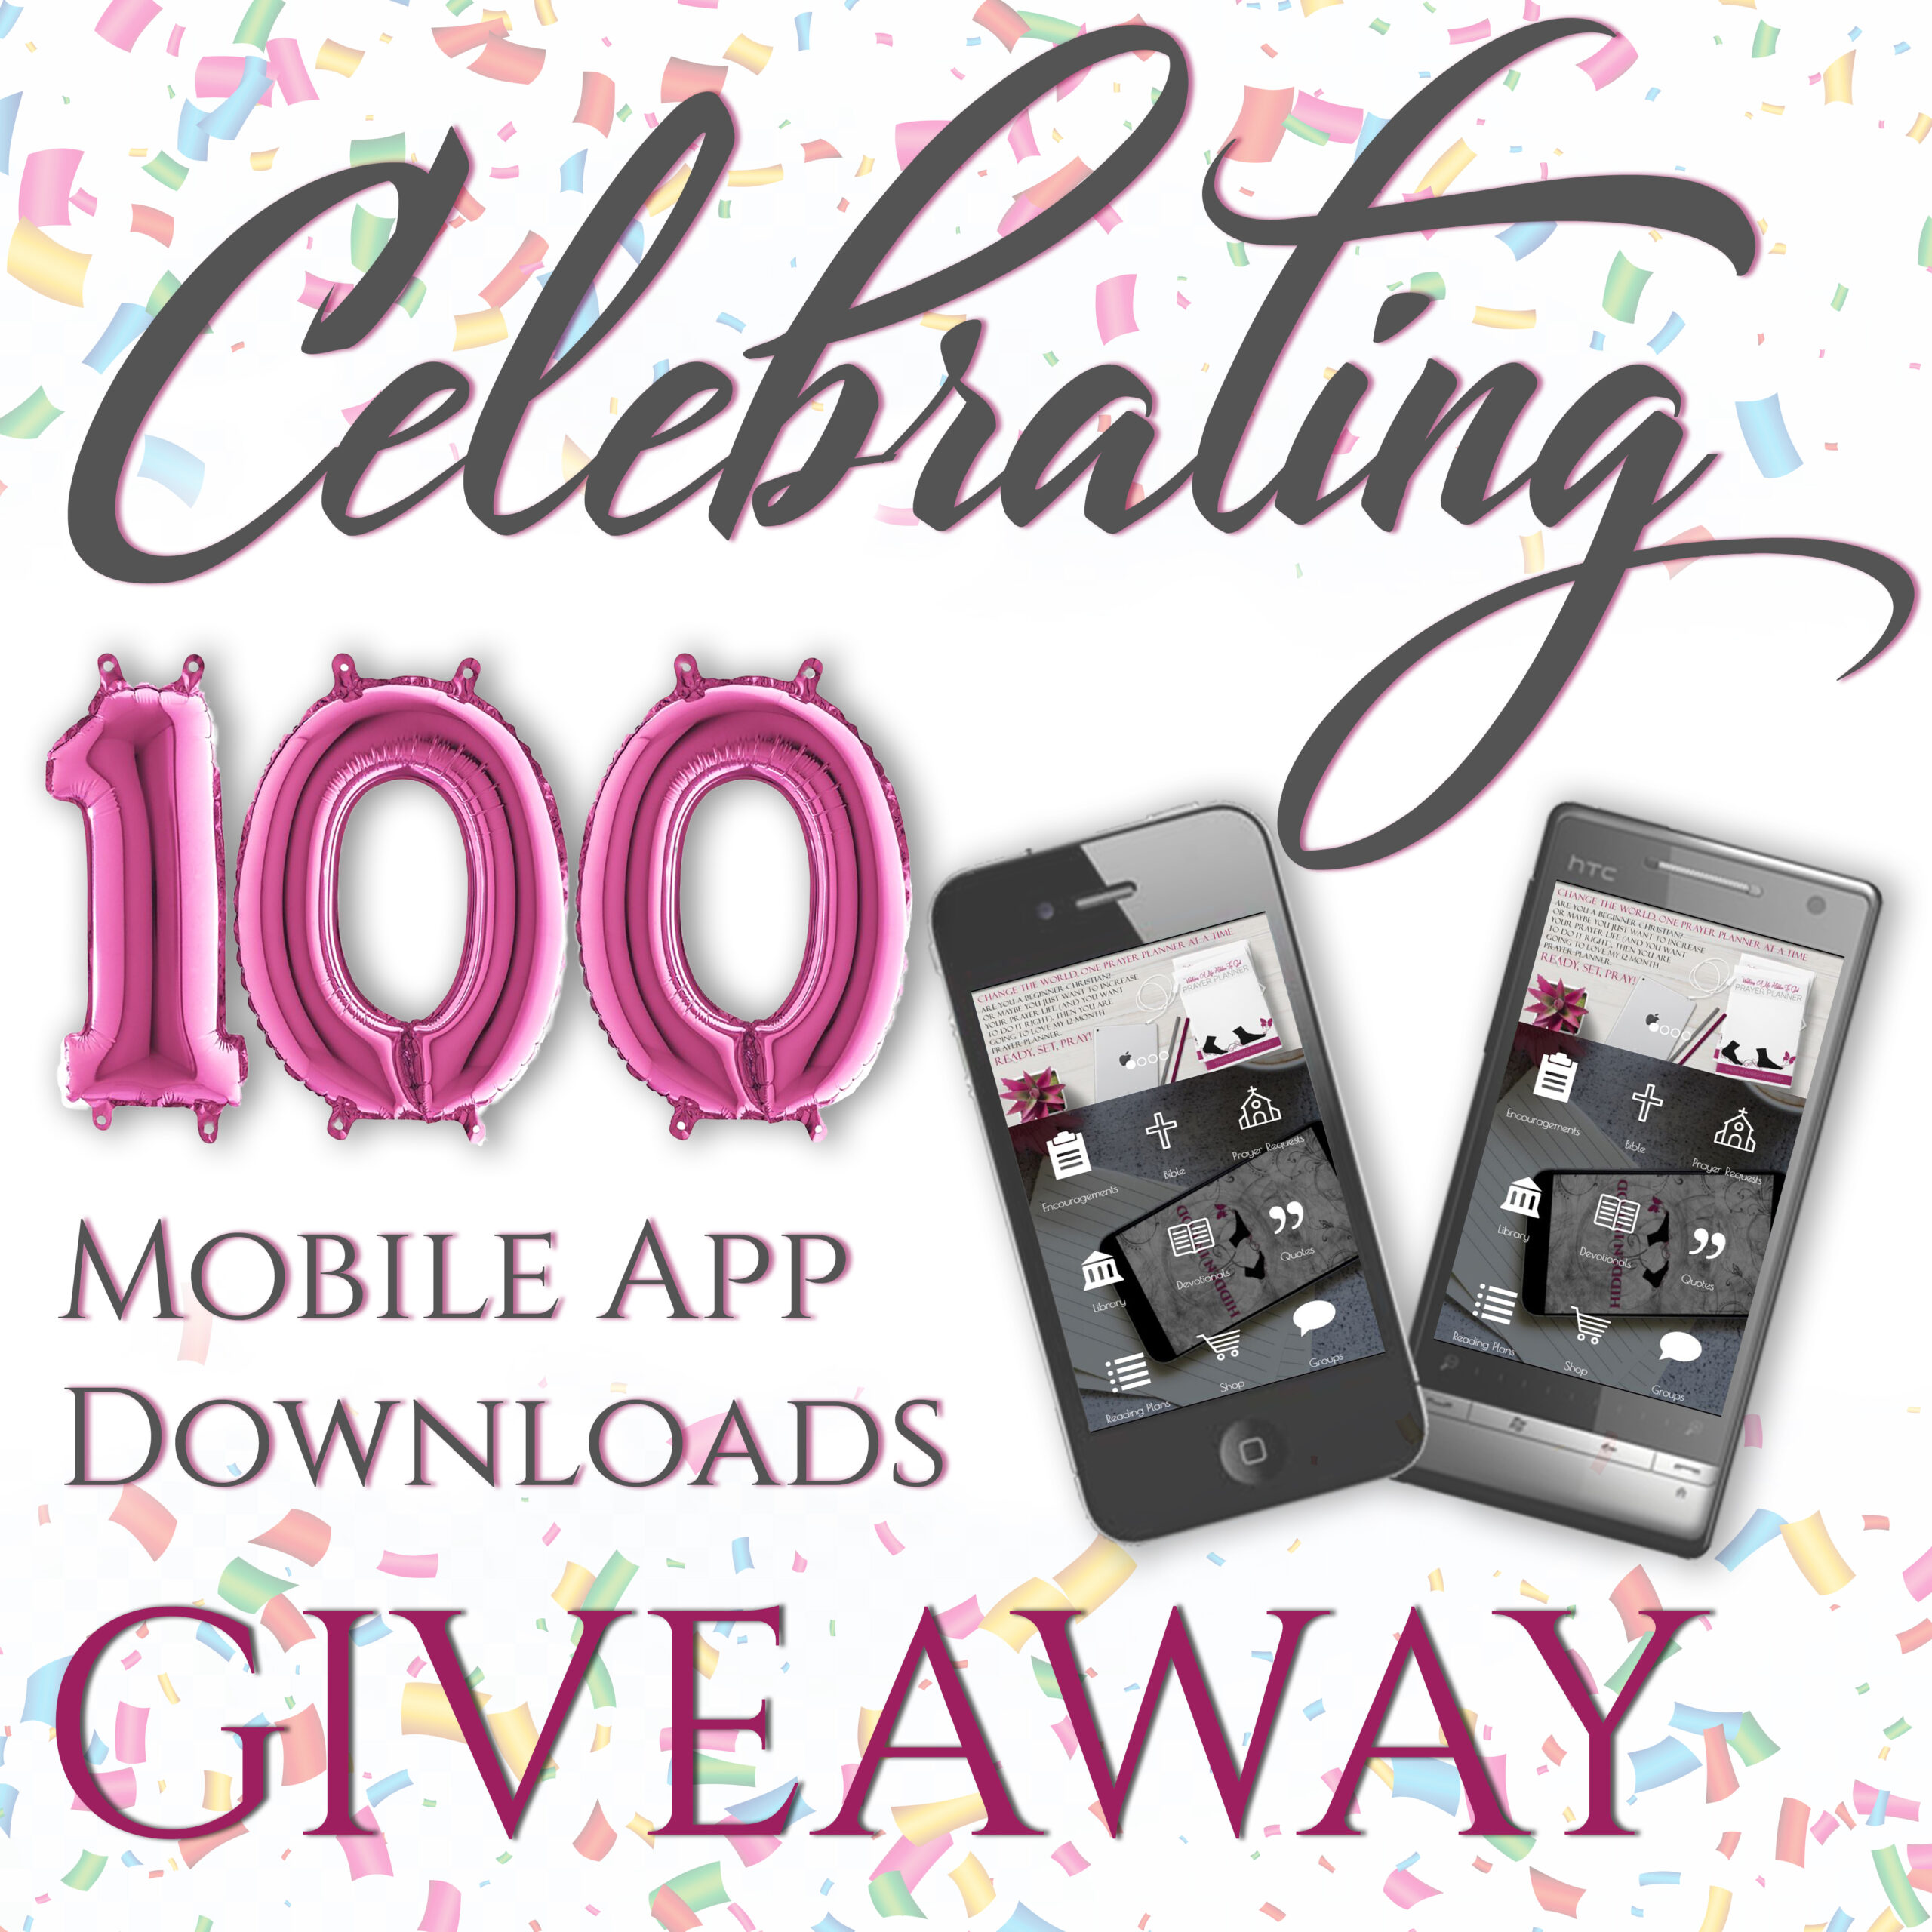 Celebrating 100 Mobile App Downloands